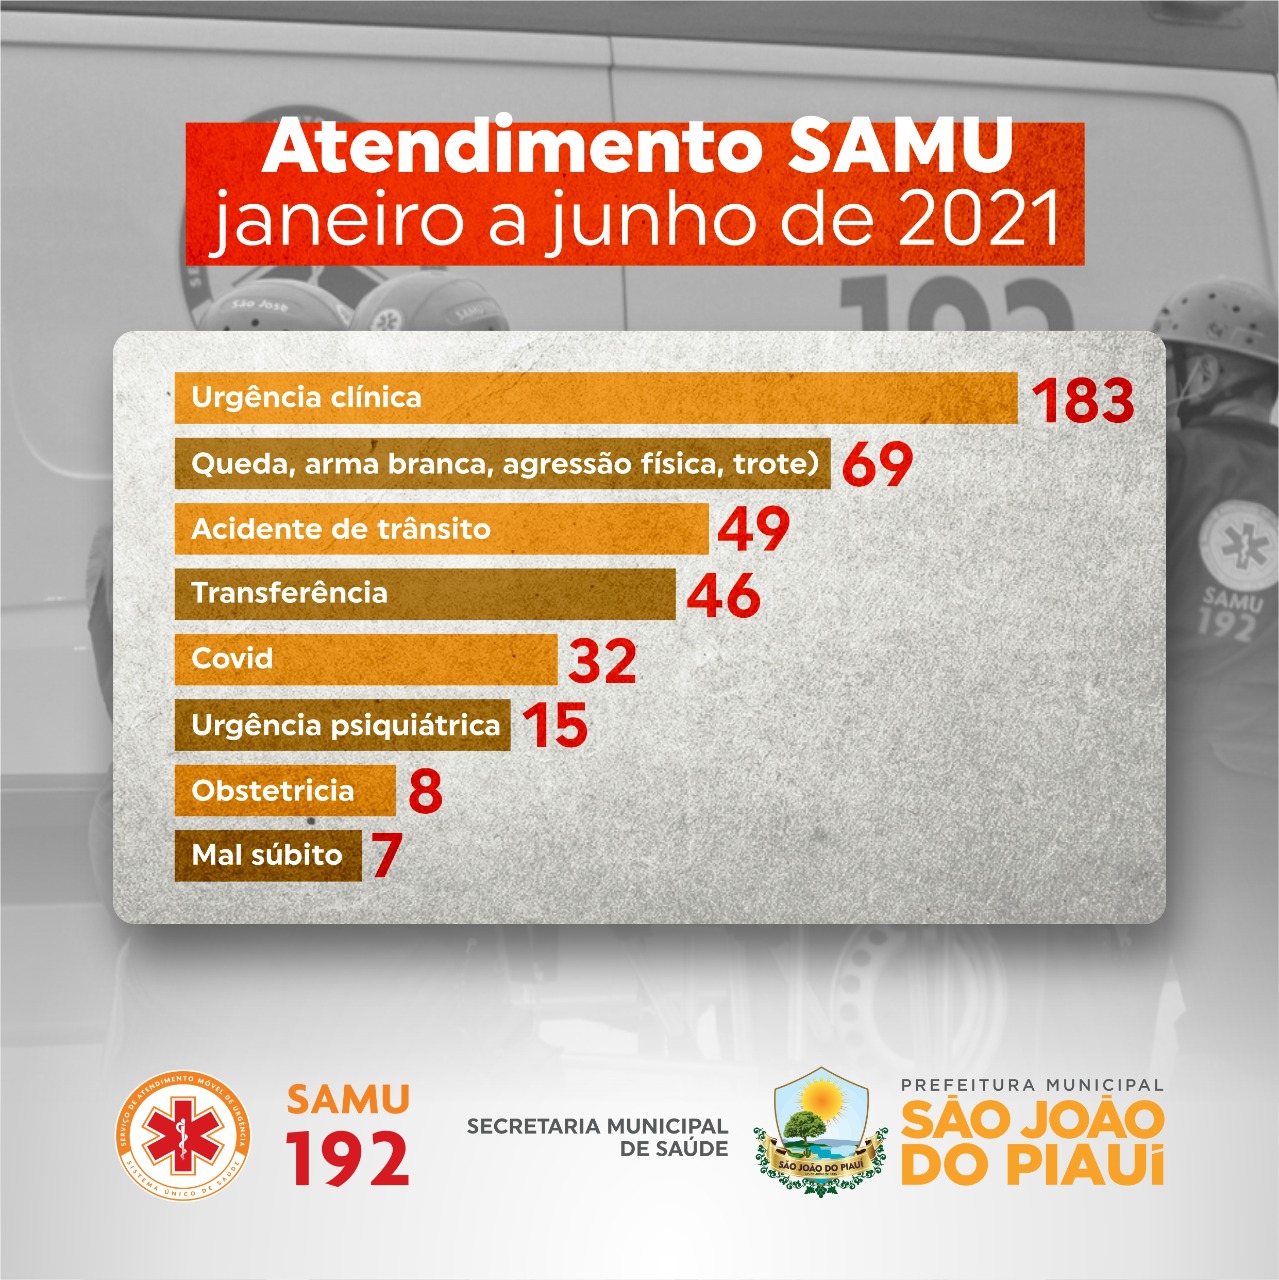 SAMU fez mais de 400 atendimentos no primeiro semestre de 2021 